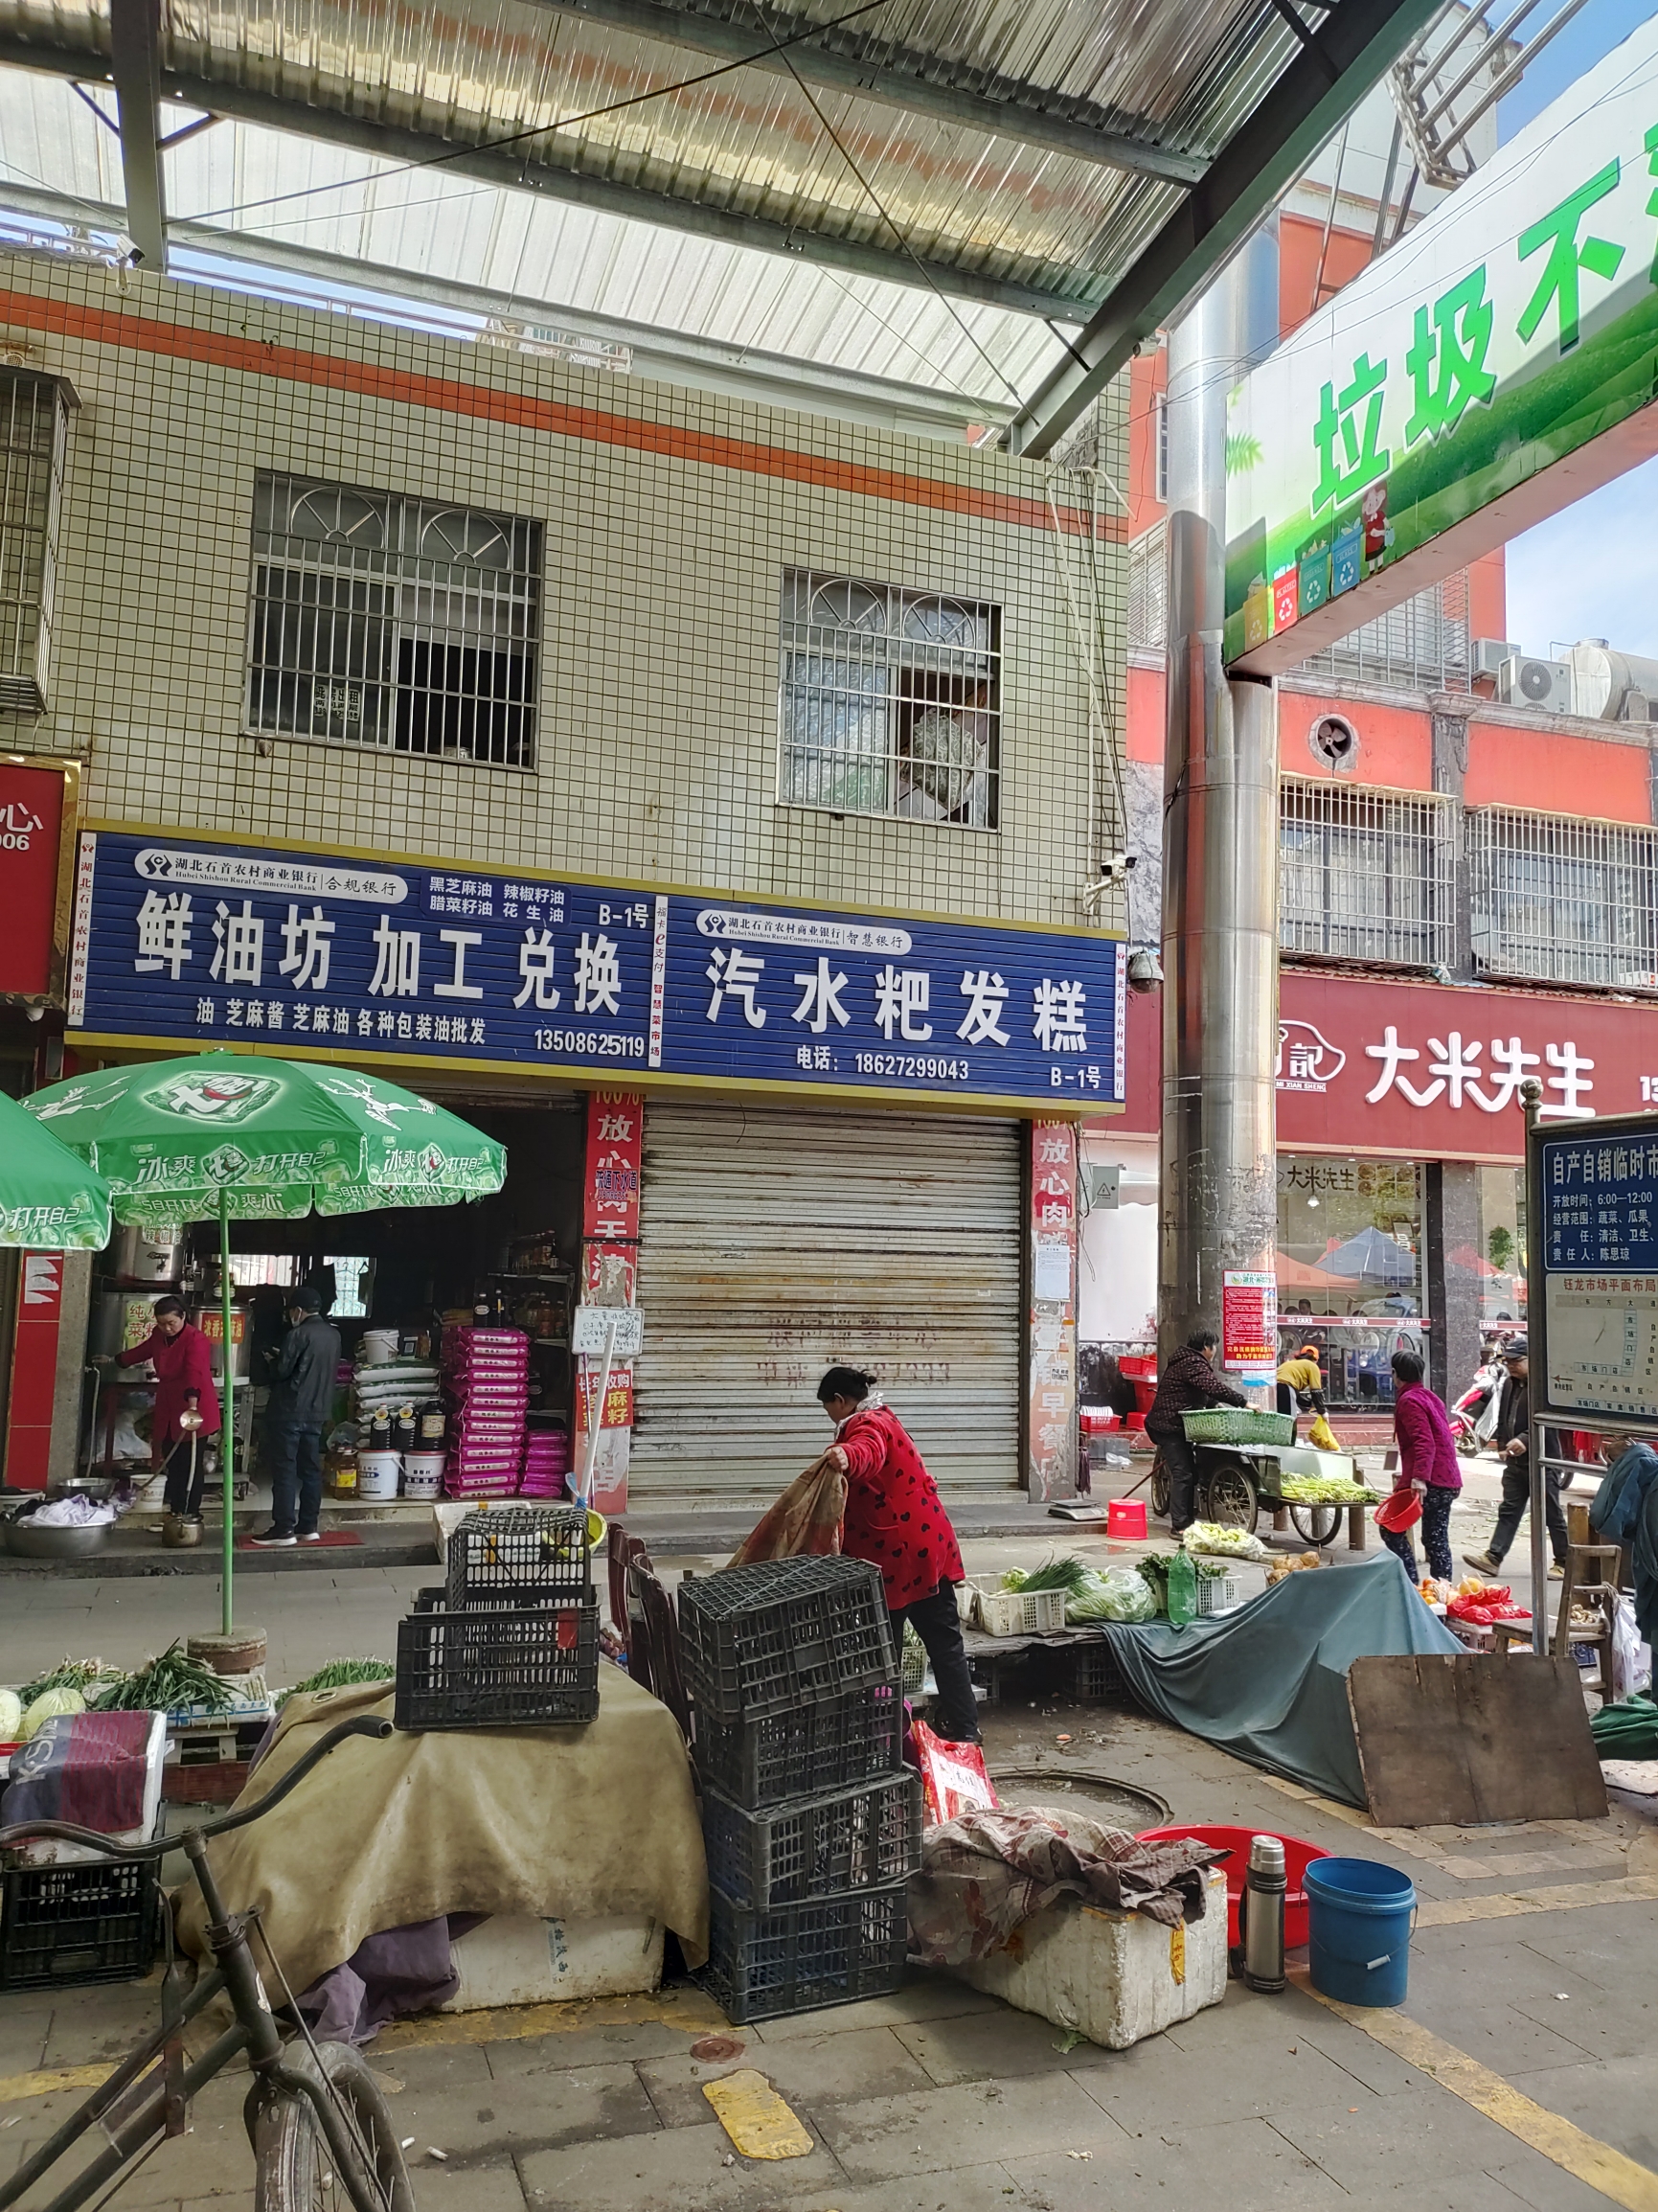 笔架山市场是石首市区一个大的农贸市场